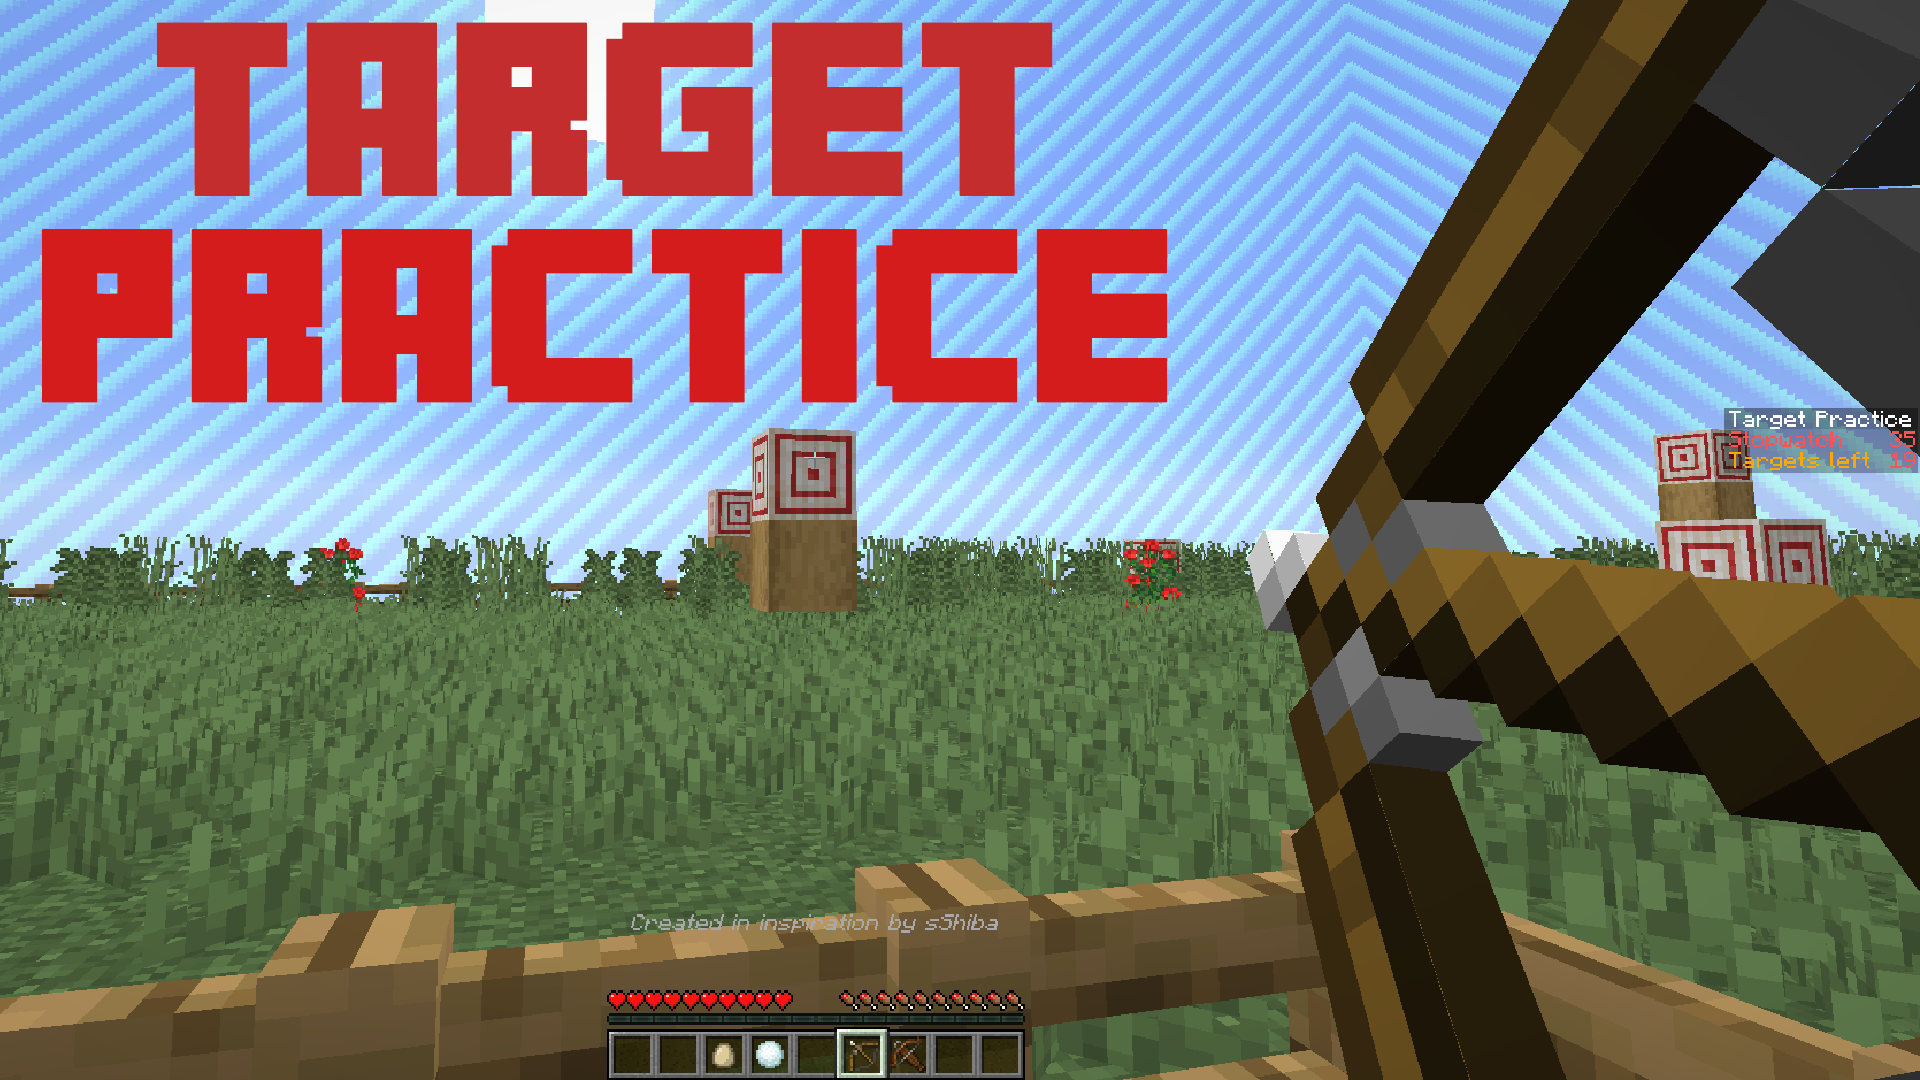 Descarca Target Practice pentru Minecraft 1.16